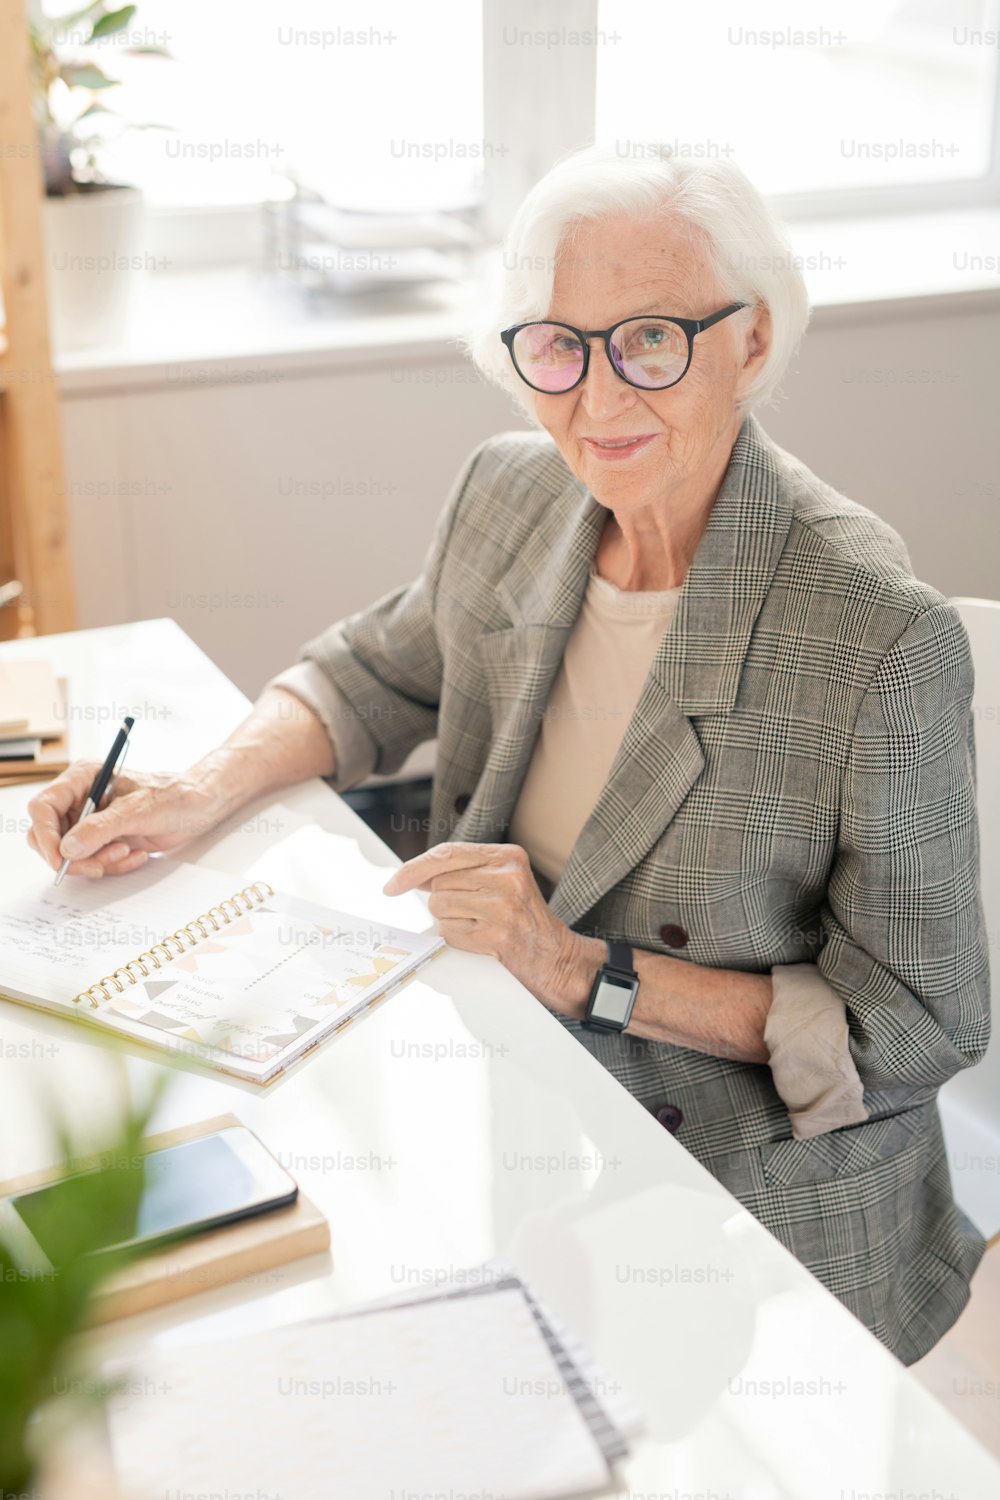 Trabalhador de escritório idoso bem-sucedido com cabelos brancos sentado ao lado da mesa enquanto planeja o dia de trabalho pela manhã